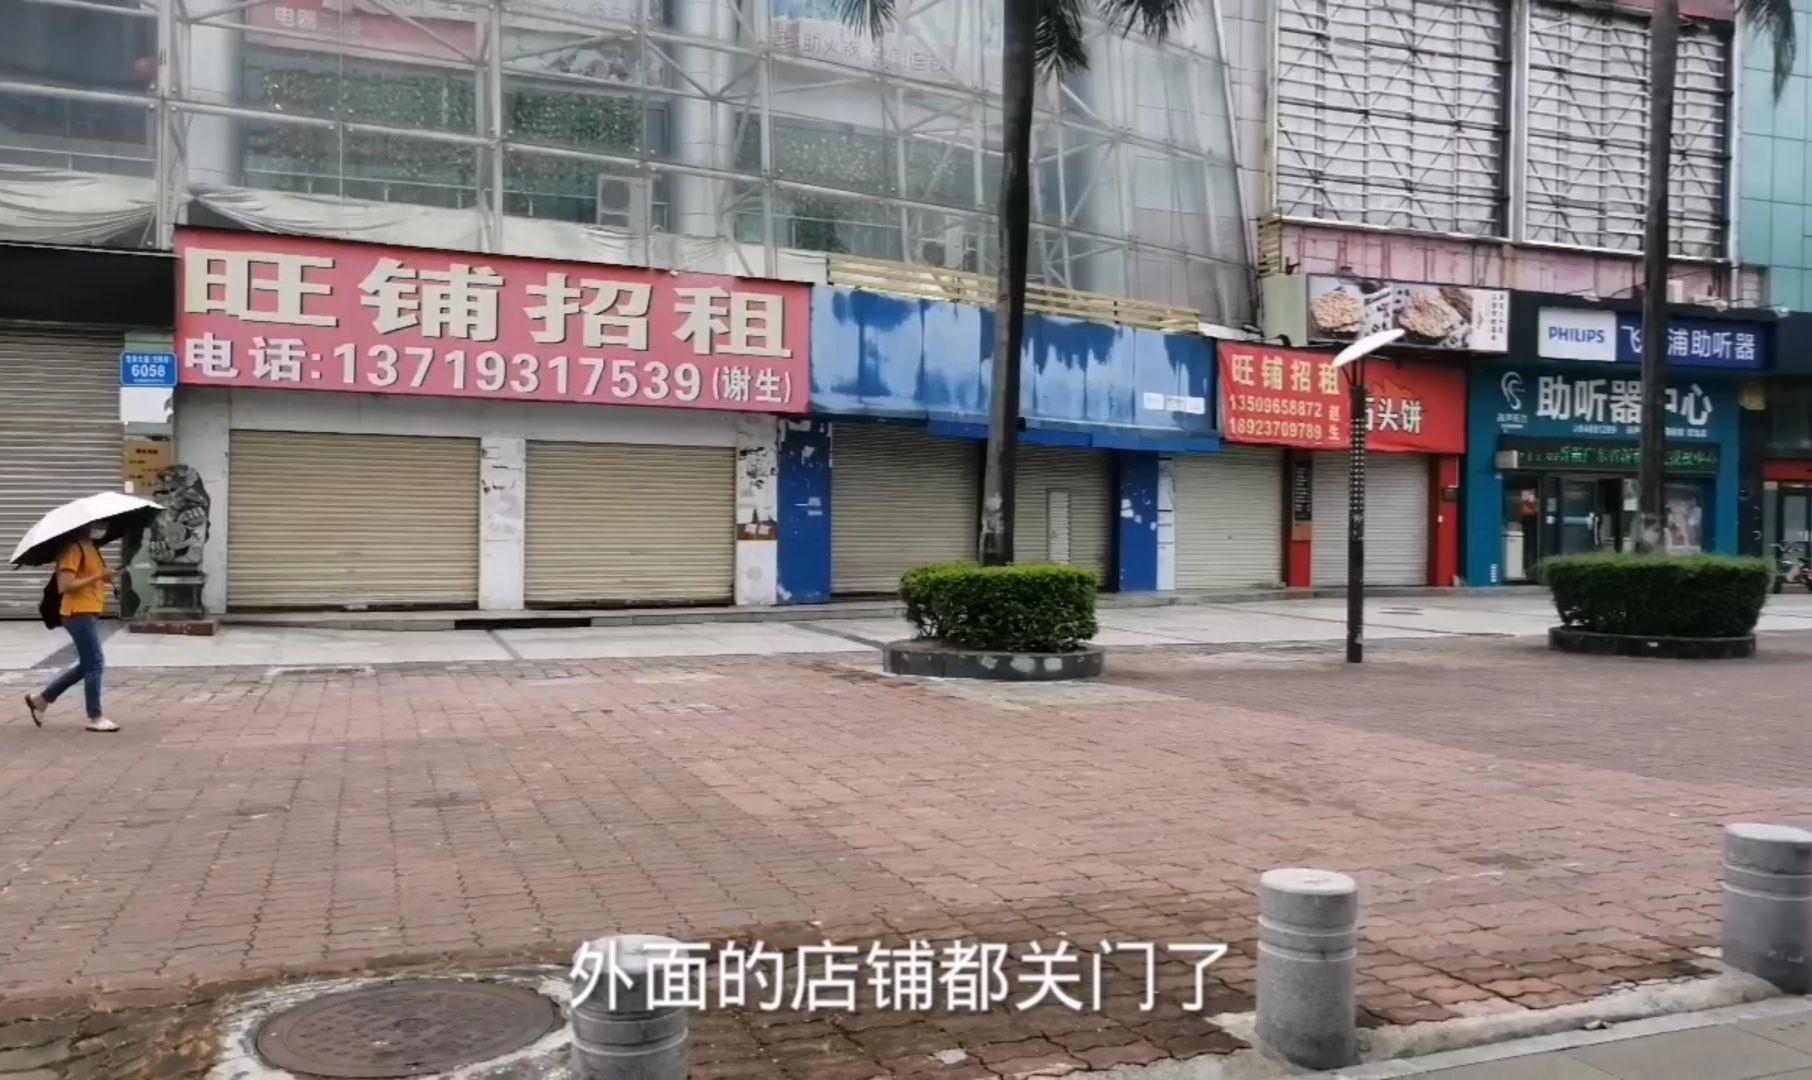 上海有条商业街上很多商铺关门倒闭了,压垮实体店的究竟是什么?